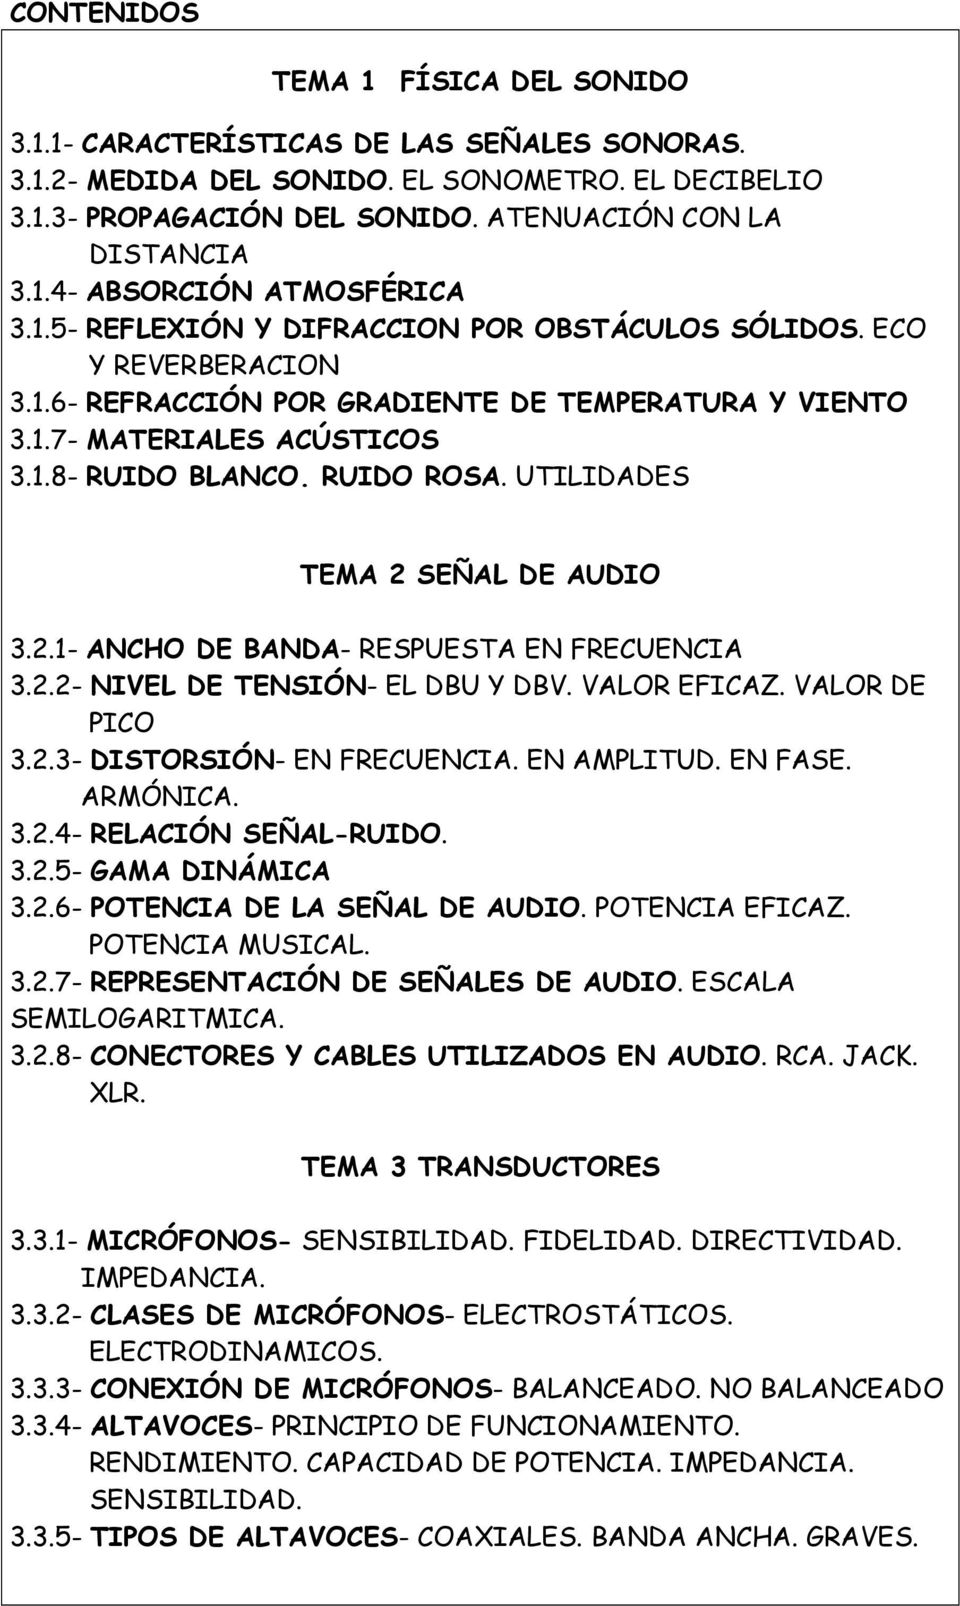 UTILIDADES TEMA 2 SEÑAL DE AUDIO 3.2.1- ANCHO DE BANDA- RESPUESTA EN FRECUENCIA 3.2.2- NIVEL DE TENSIÓN- EL DBU Y DBV. VALOR EFICAZ. VALOR DE PICO 3.2.3- DISTORSIÓN- EN FRECUENCIA. EN AMPLITUD.